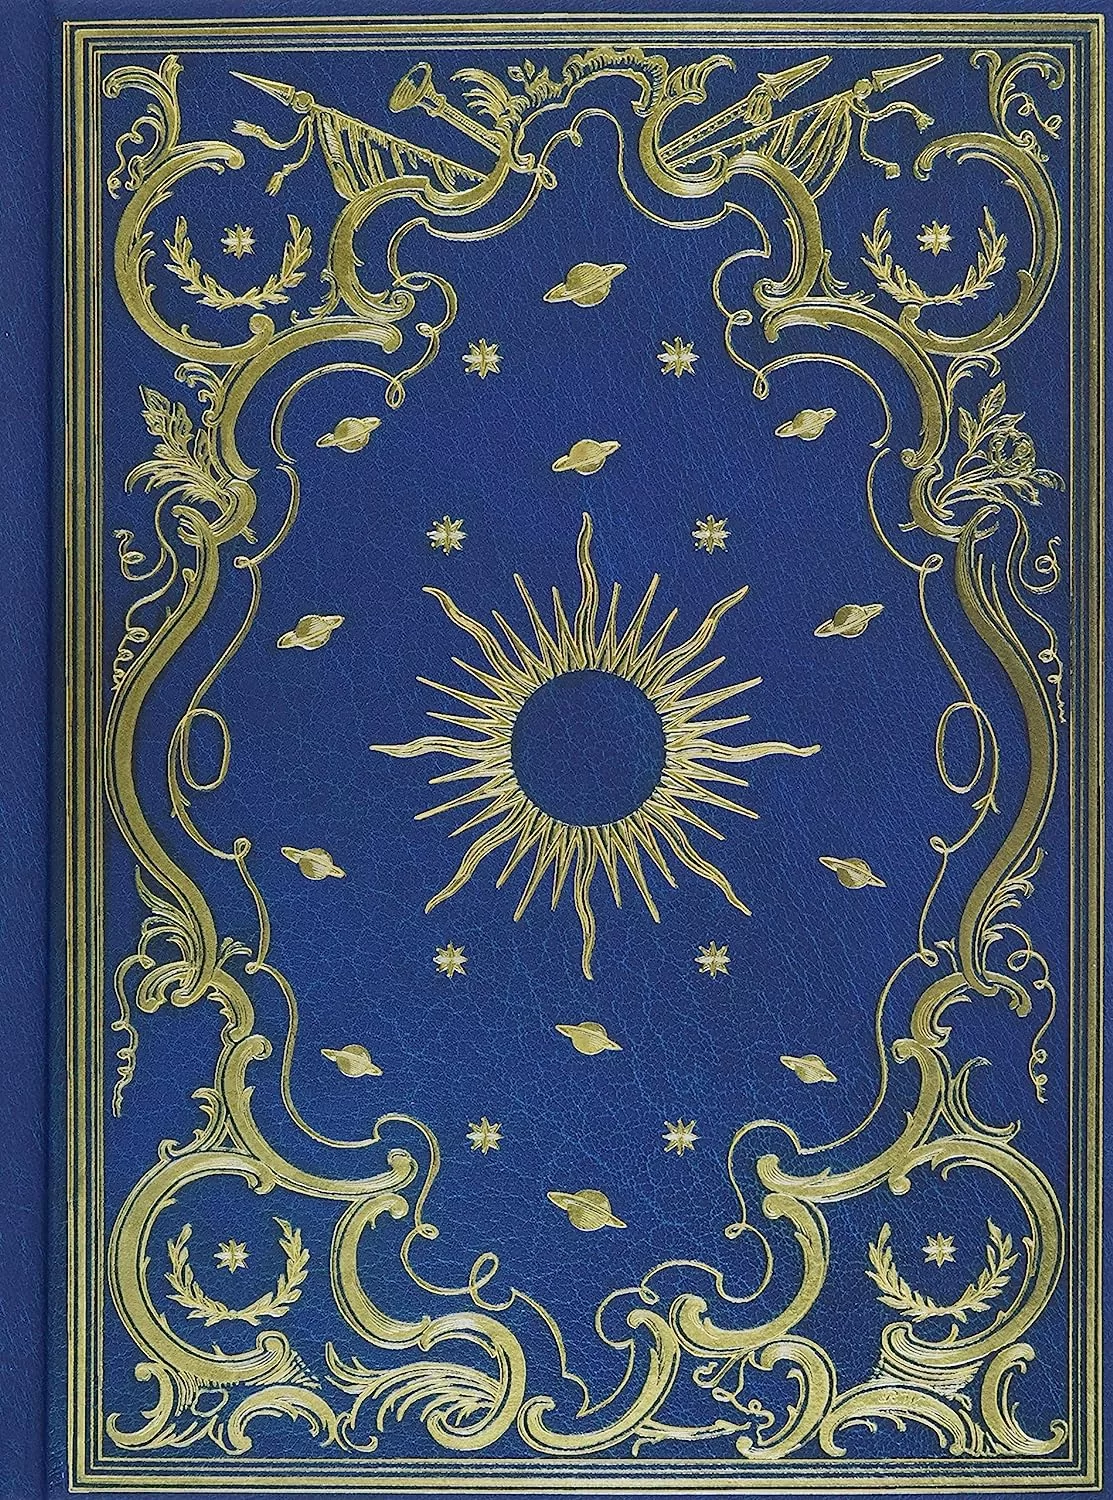 Celestial journal